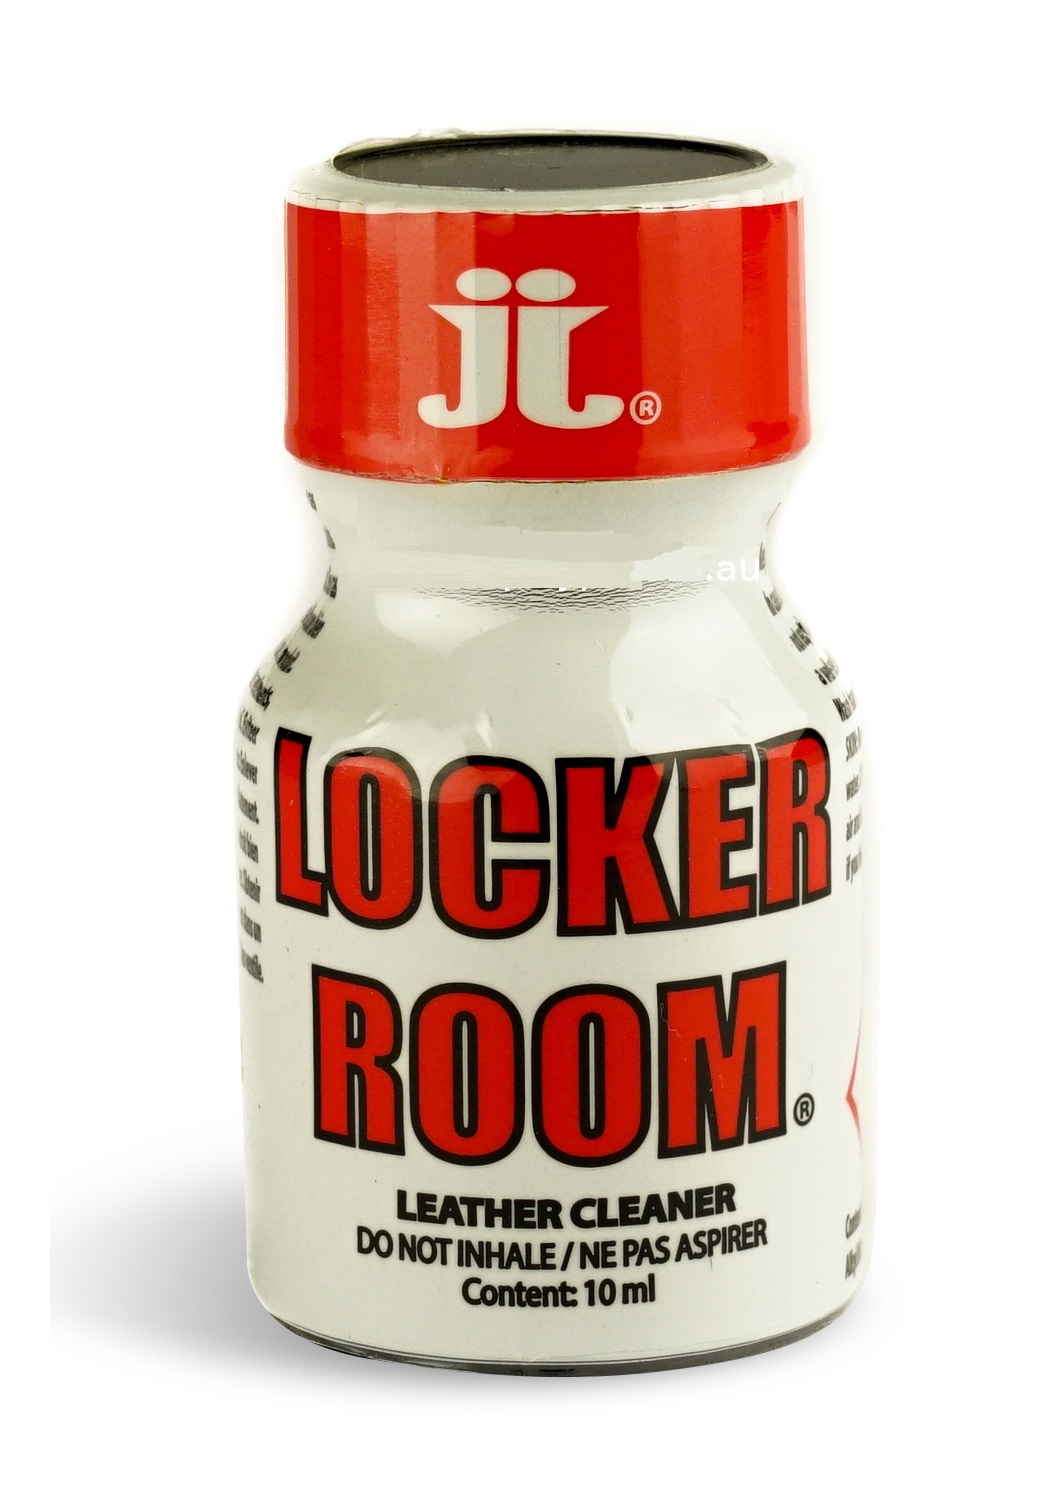 Locker Room- EU formula.